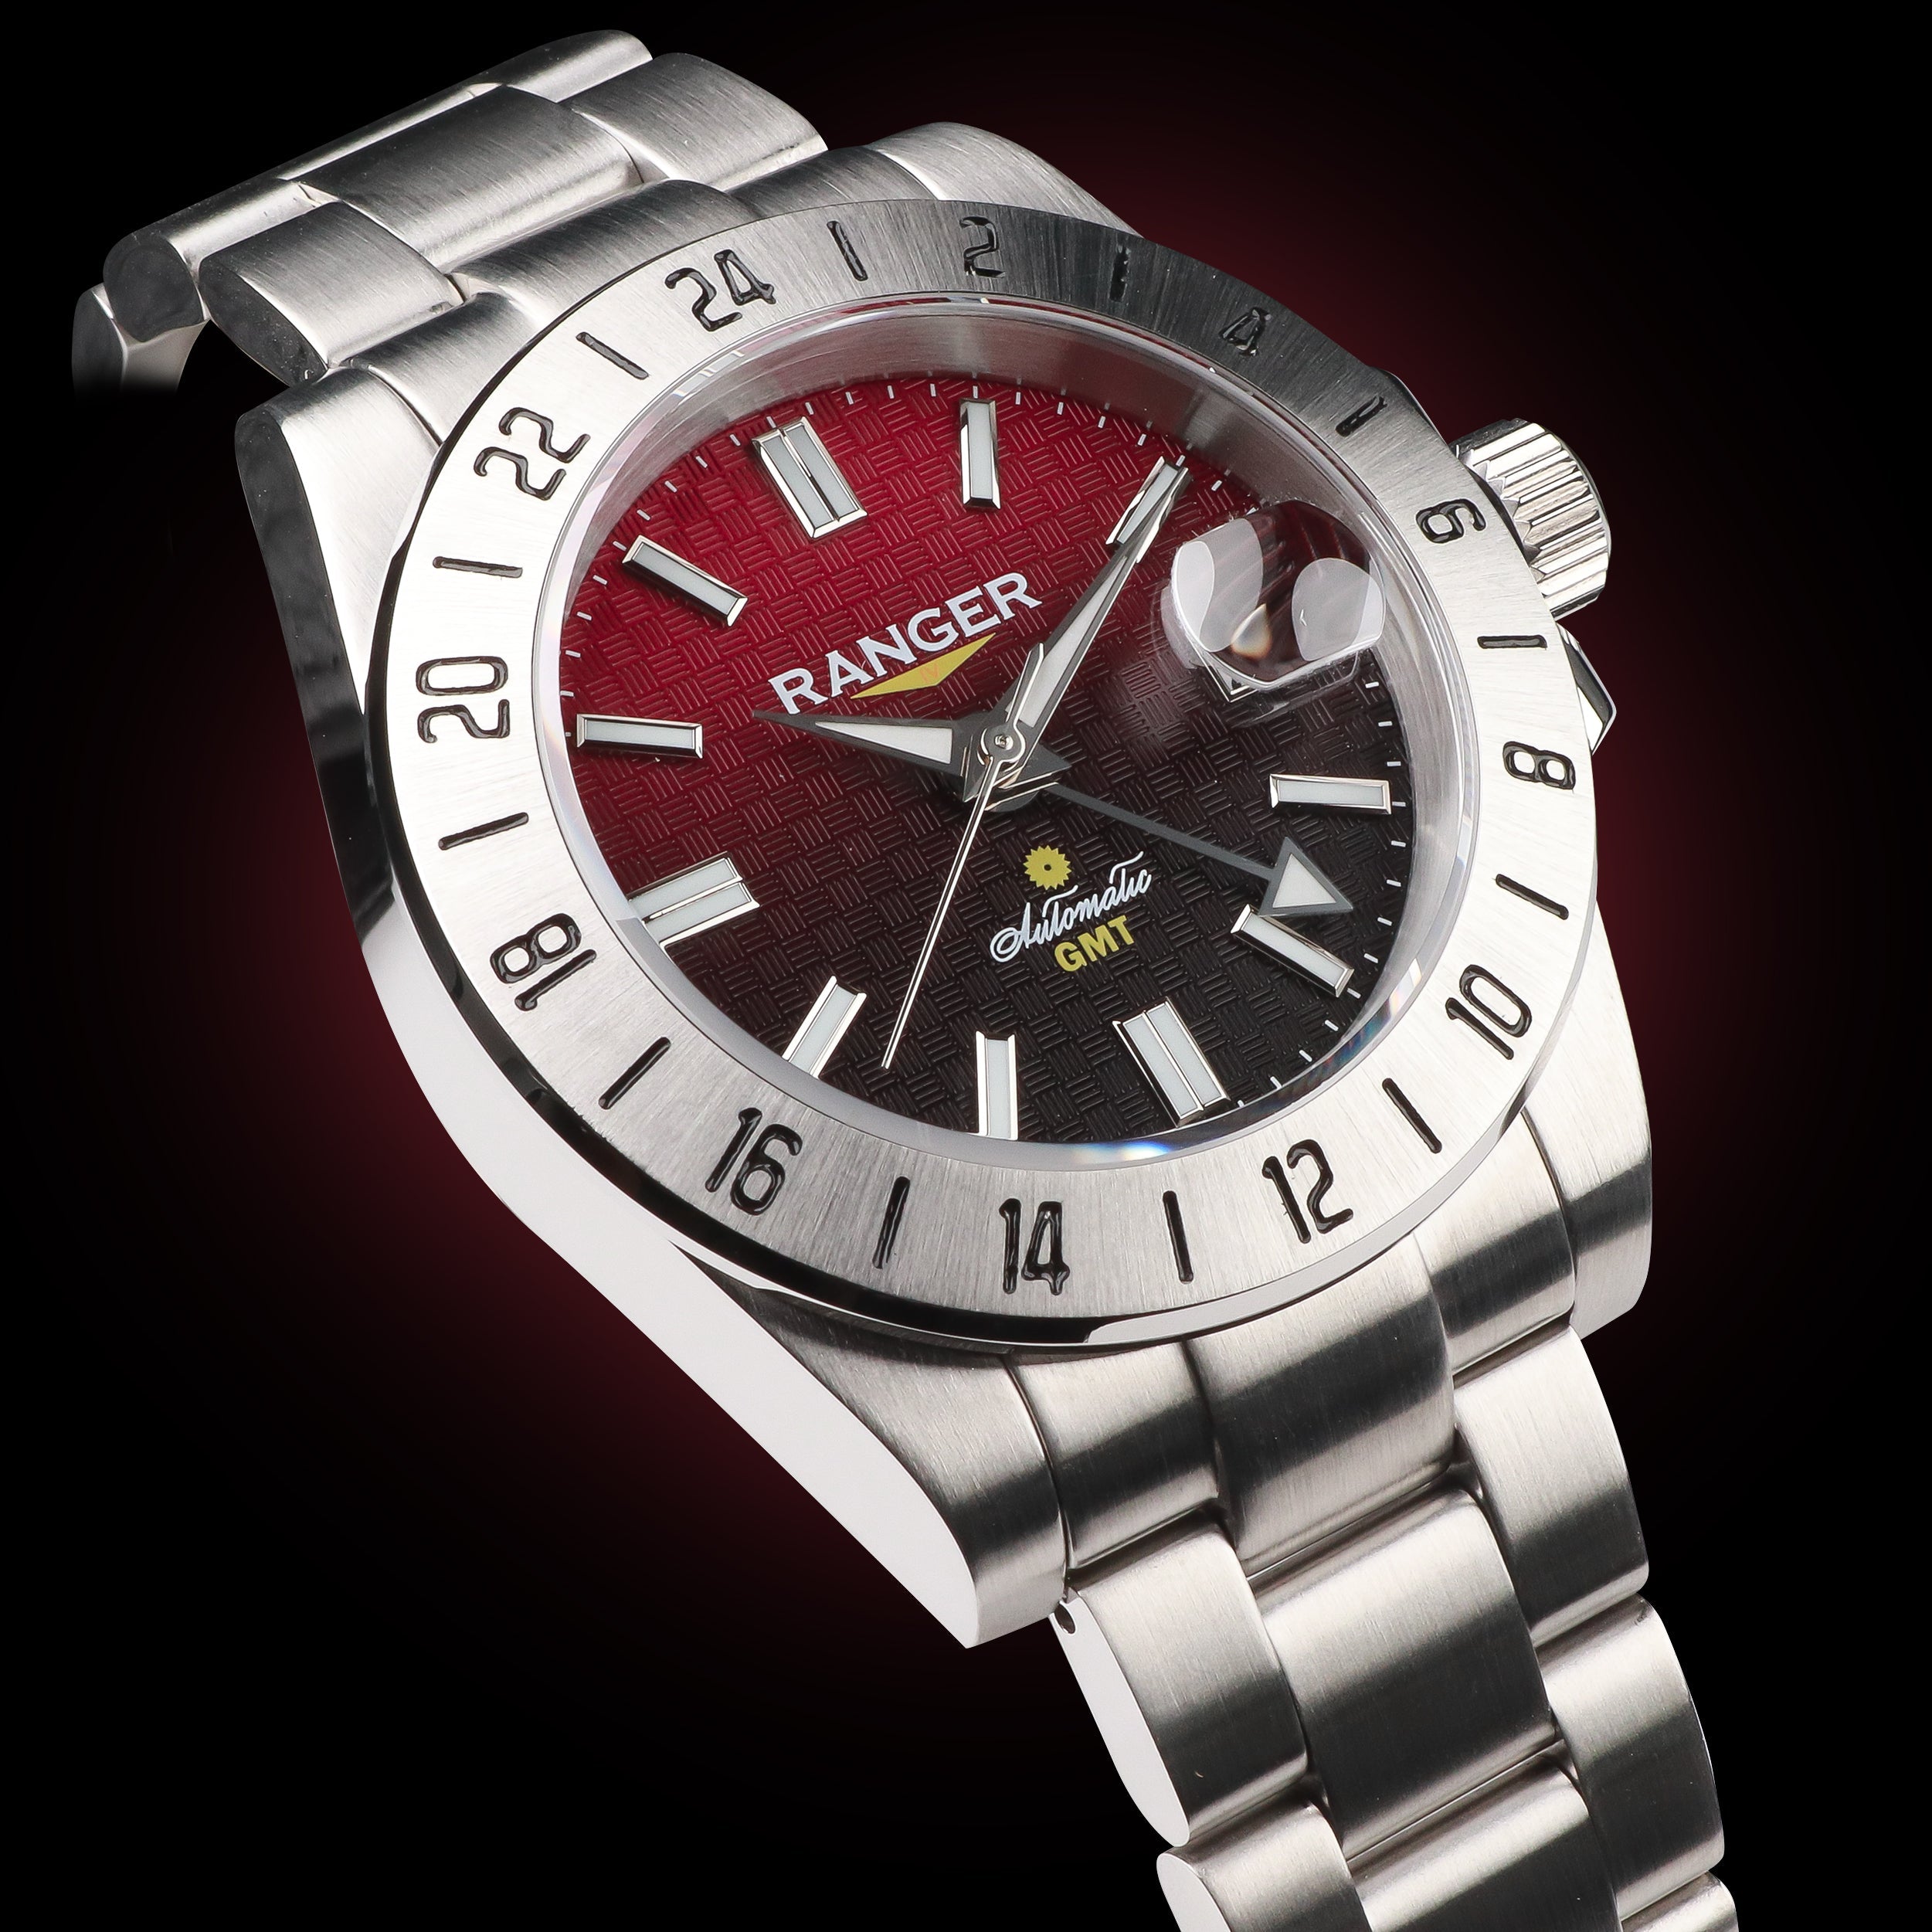 Ranger IV 赤富士 プロダクトページ。テクスチャーのあるダイアルとグラデーションのダイアルを備えたGMT自動巻き腕時計の画像 NH34 Seiko Movement 